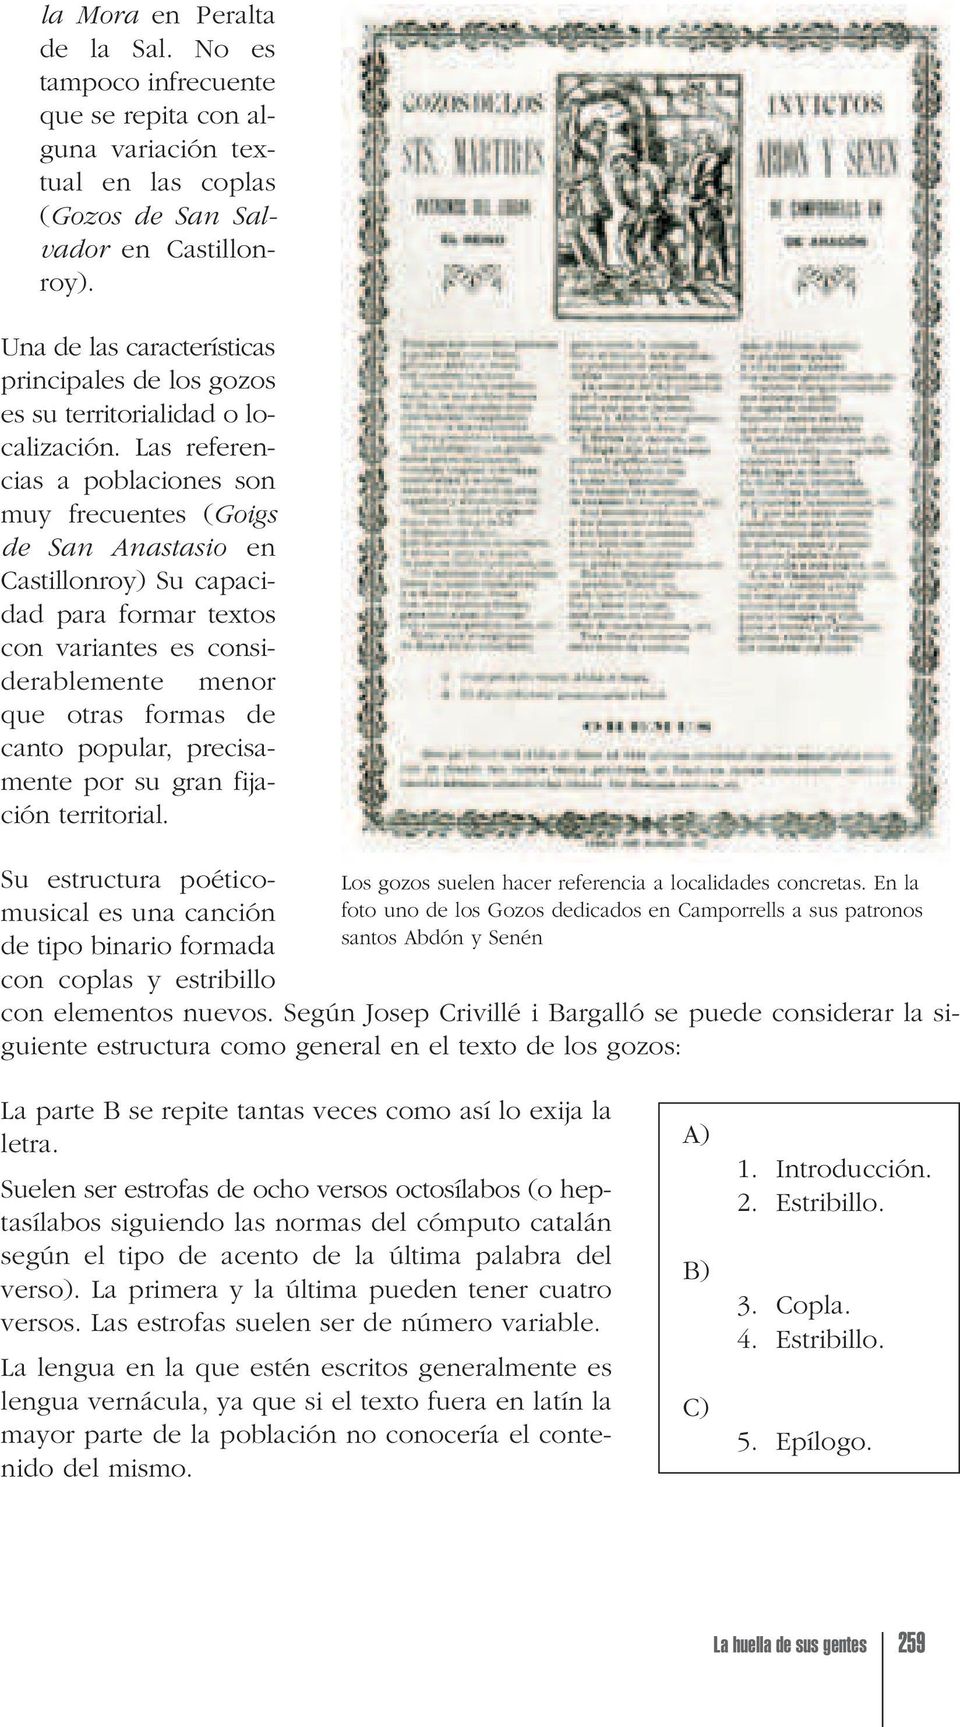 Las referencias a poblaciones son muy frecuentes (Goigs de San Anastasio en Castillonroy) Su capacidad para formar textos con variantes es considerablemente menor que otras formas de canto popular,